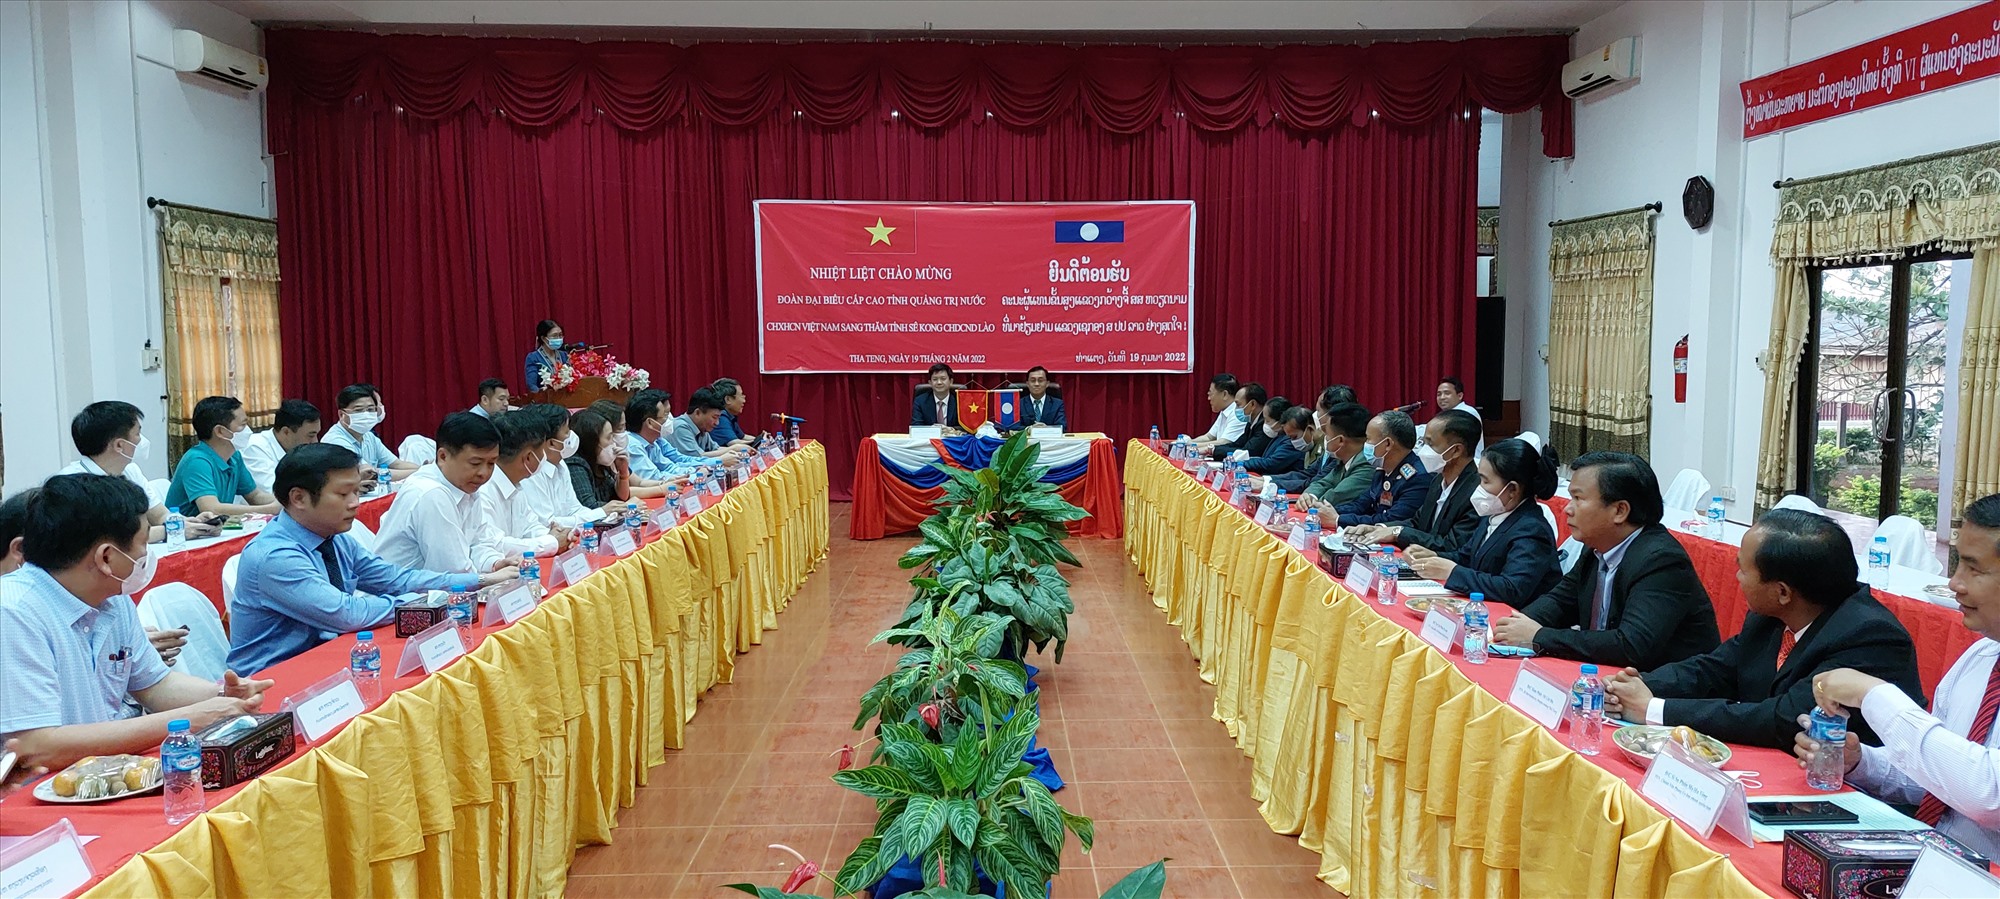 Đoàn đại biểu cấp cao hai tỉnh Quảng Trị và Sê Kông trao đổi cơ hội hợp tác giữa hai địa phương - Ảnh: N.T.H